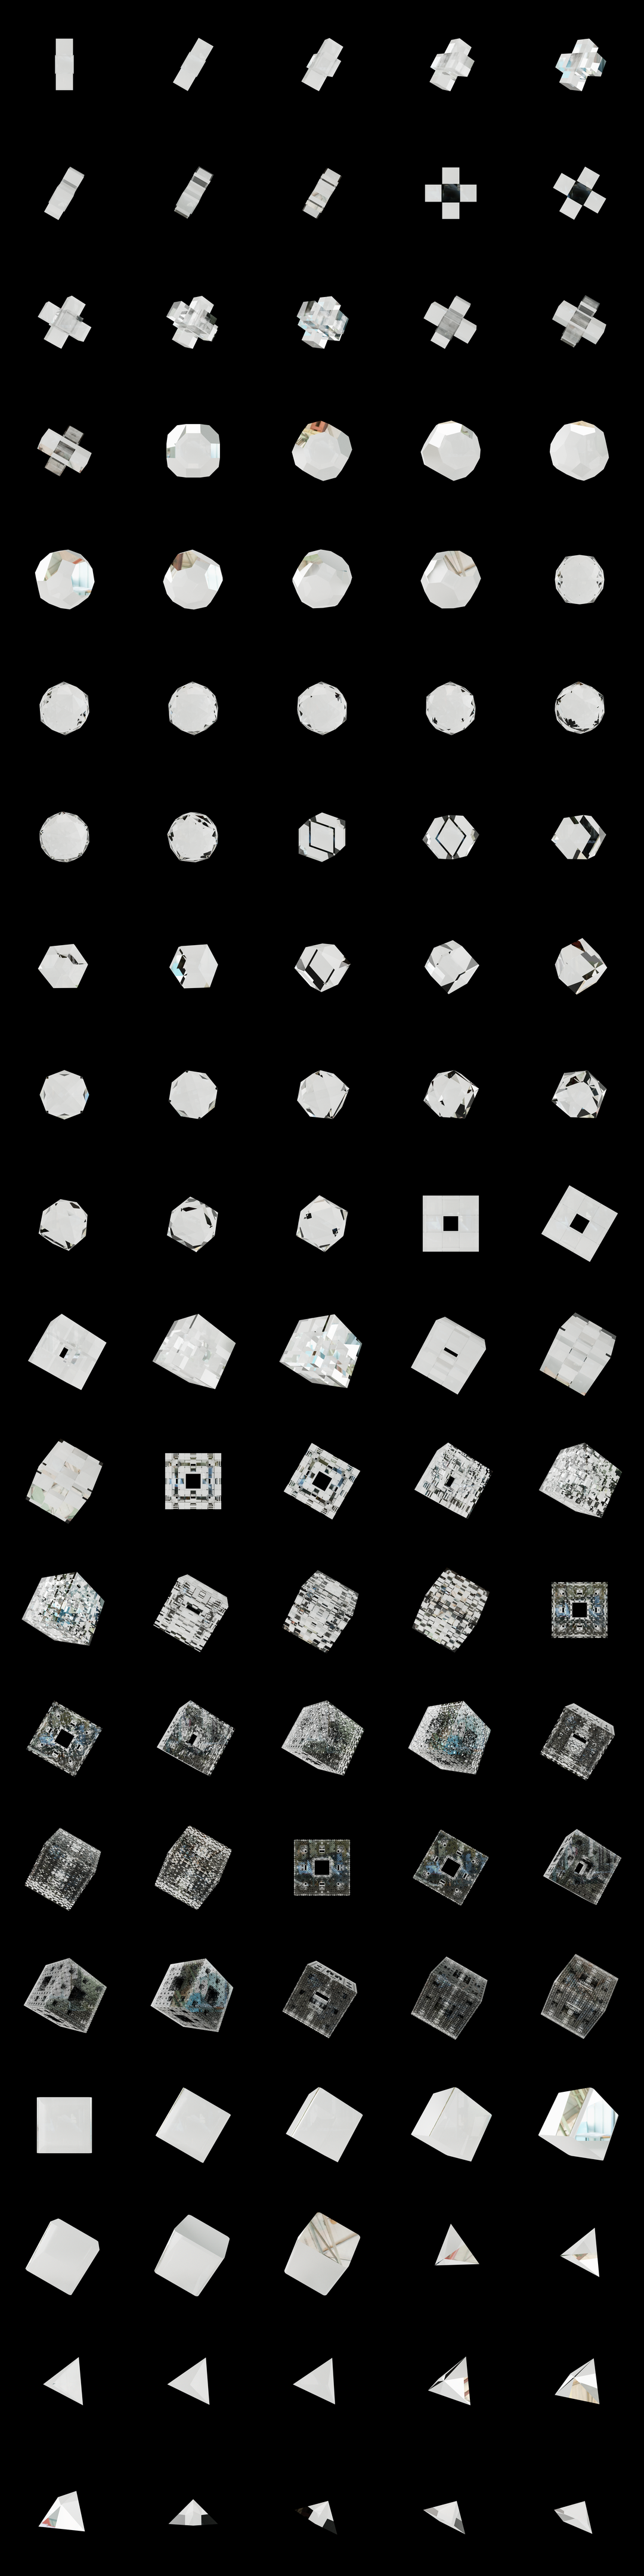 The Bundle - cmp.glass/b tile image 2